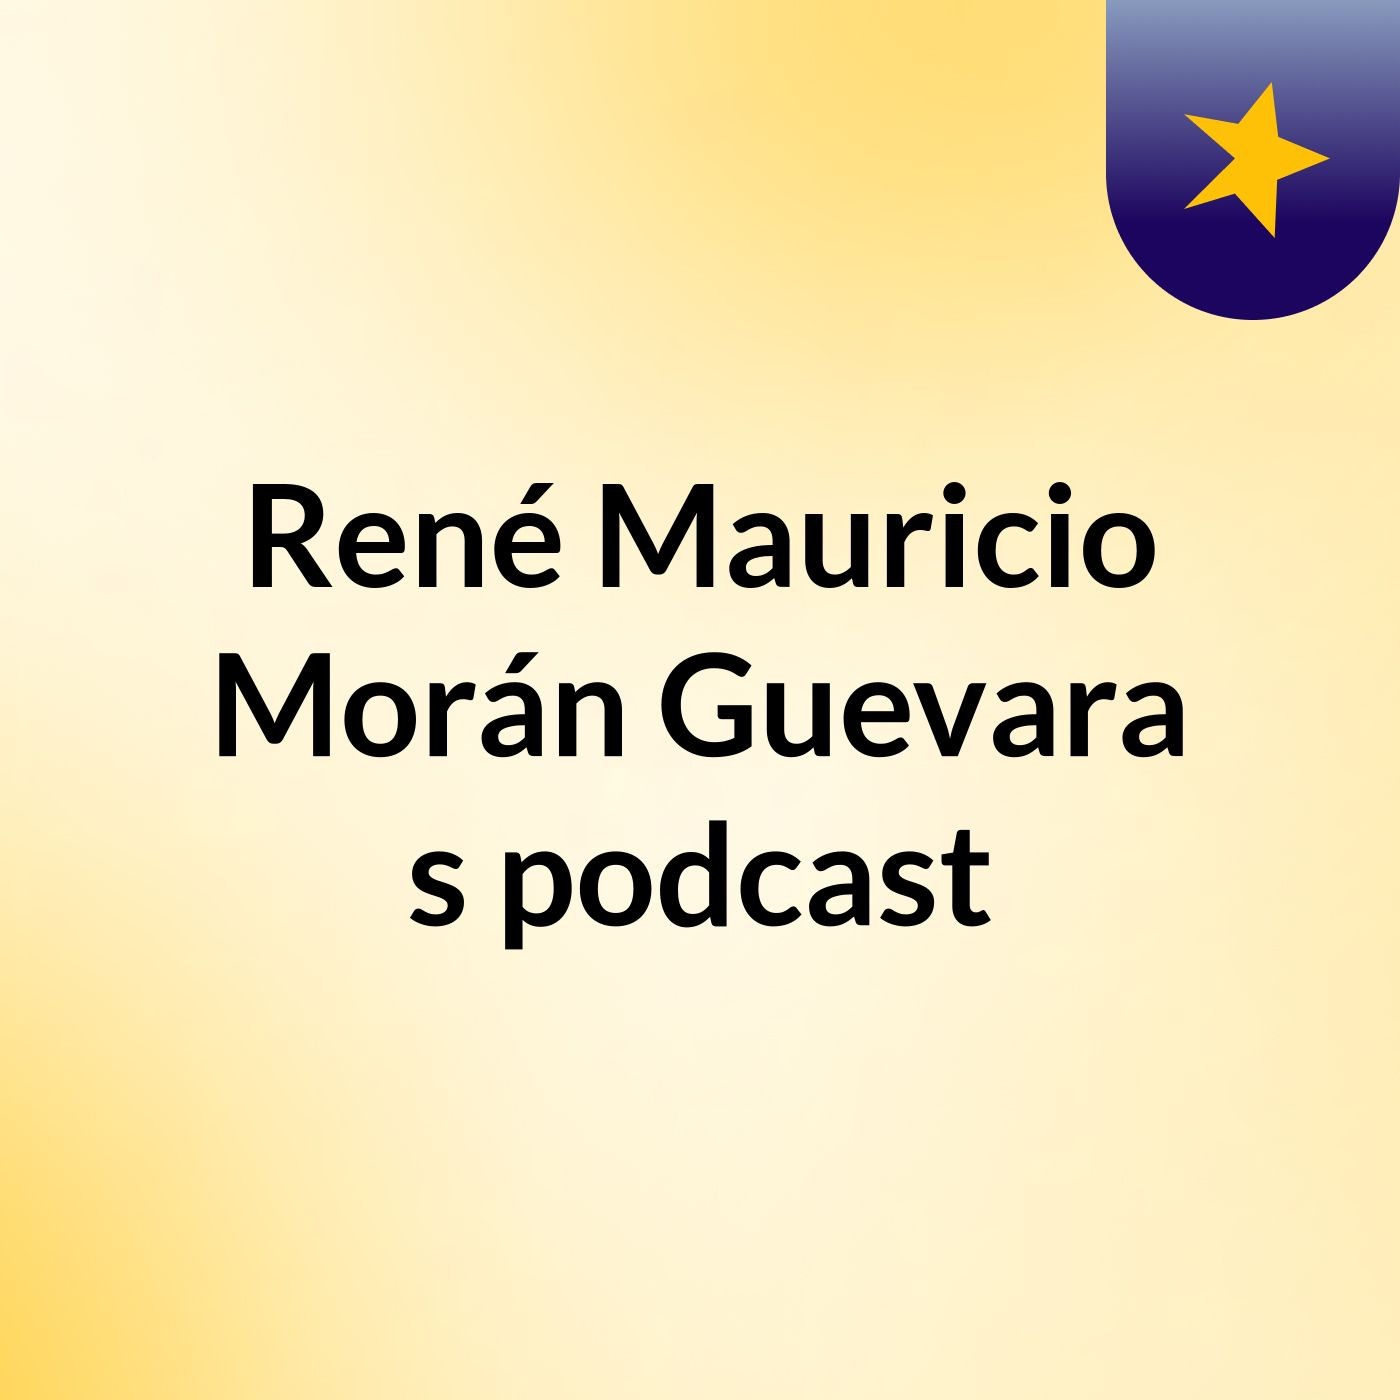 René Mauricio Morán Guevara's podcast